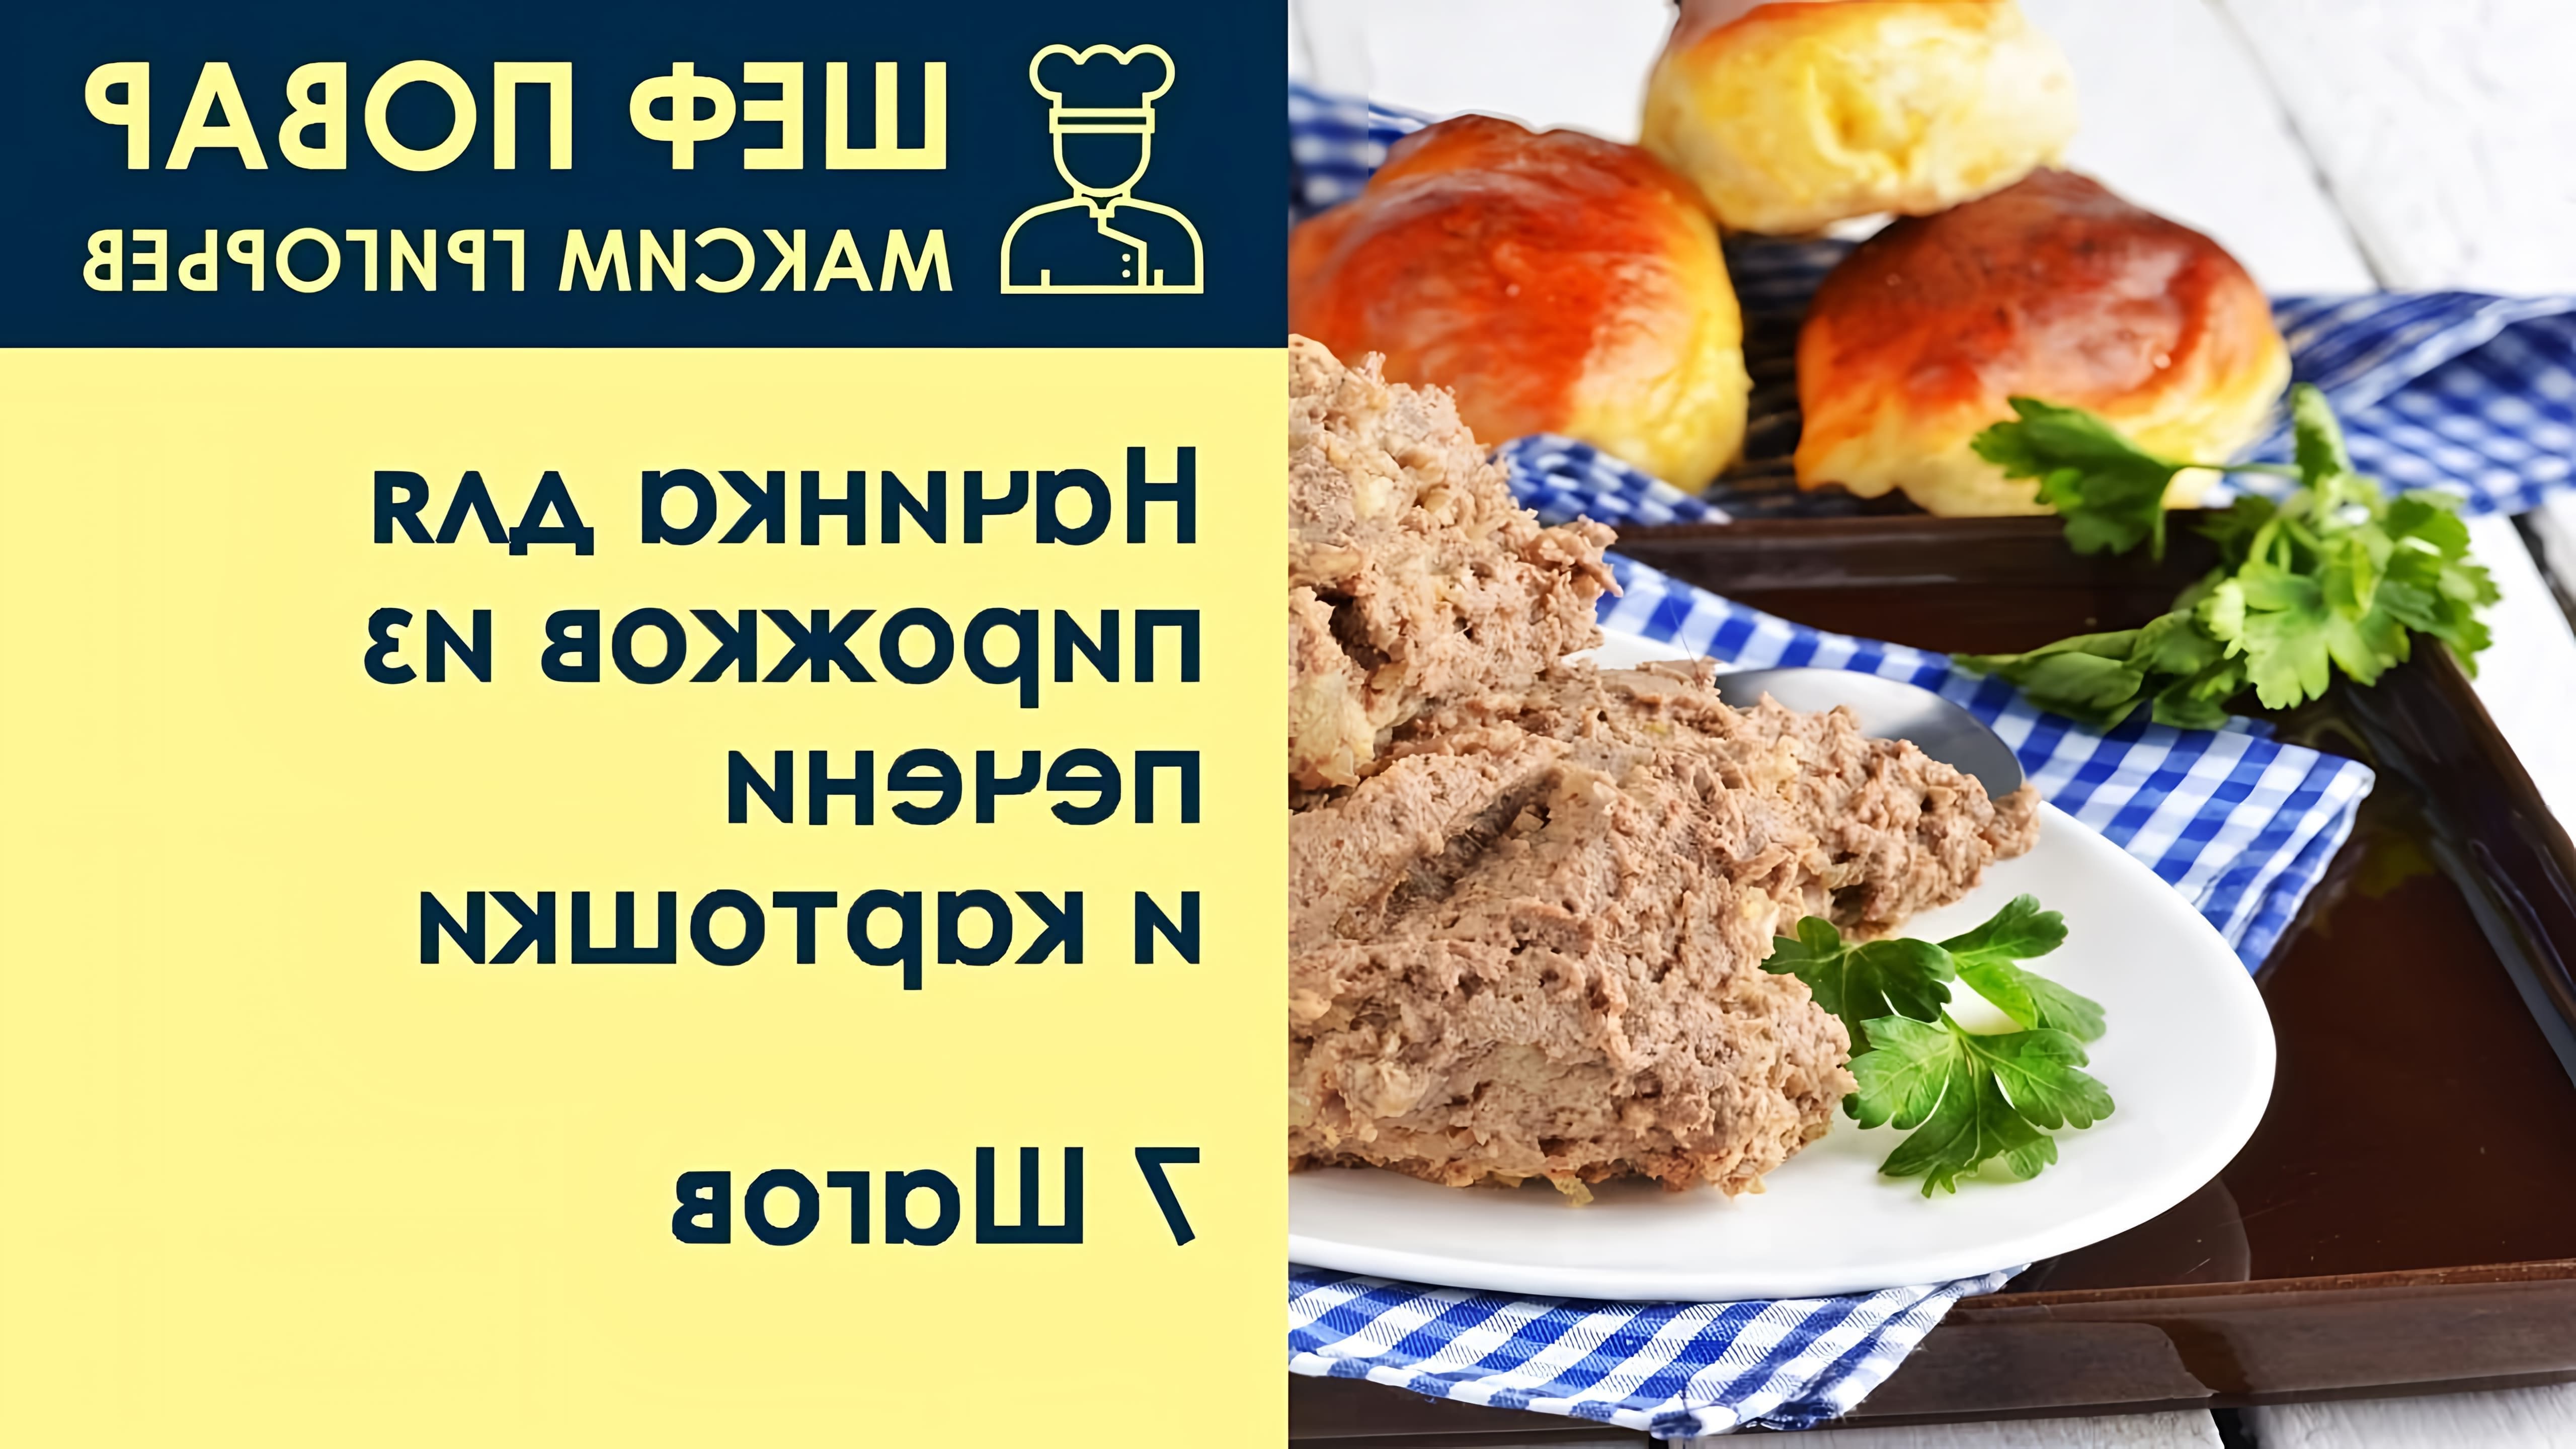 Видео рецепт начинки для пирогов с печенью и картофелем от шеф-повара Максима Григорьева